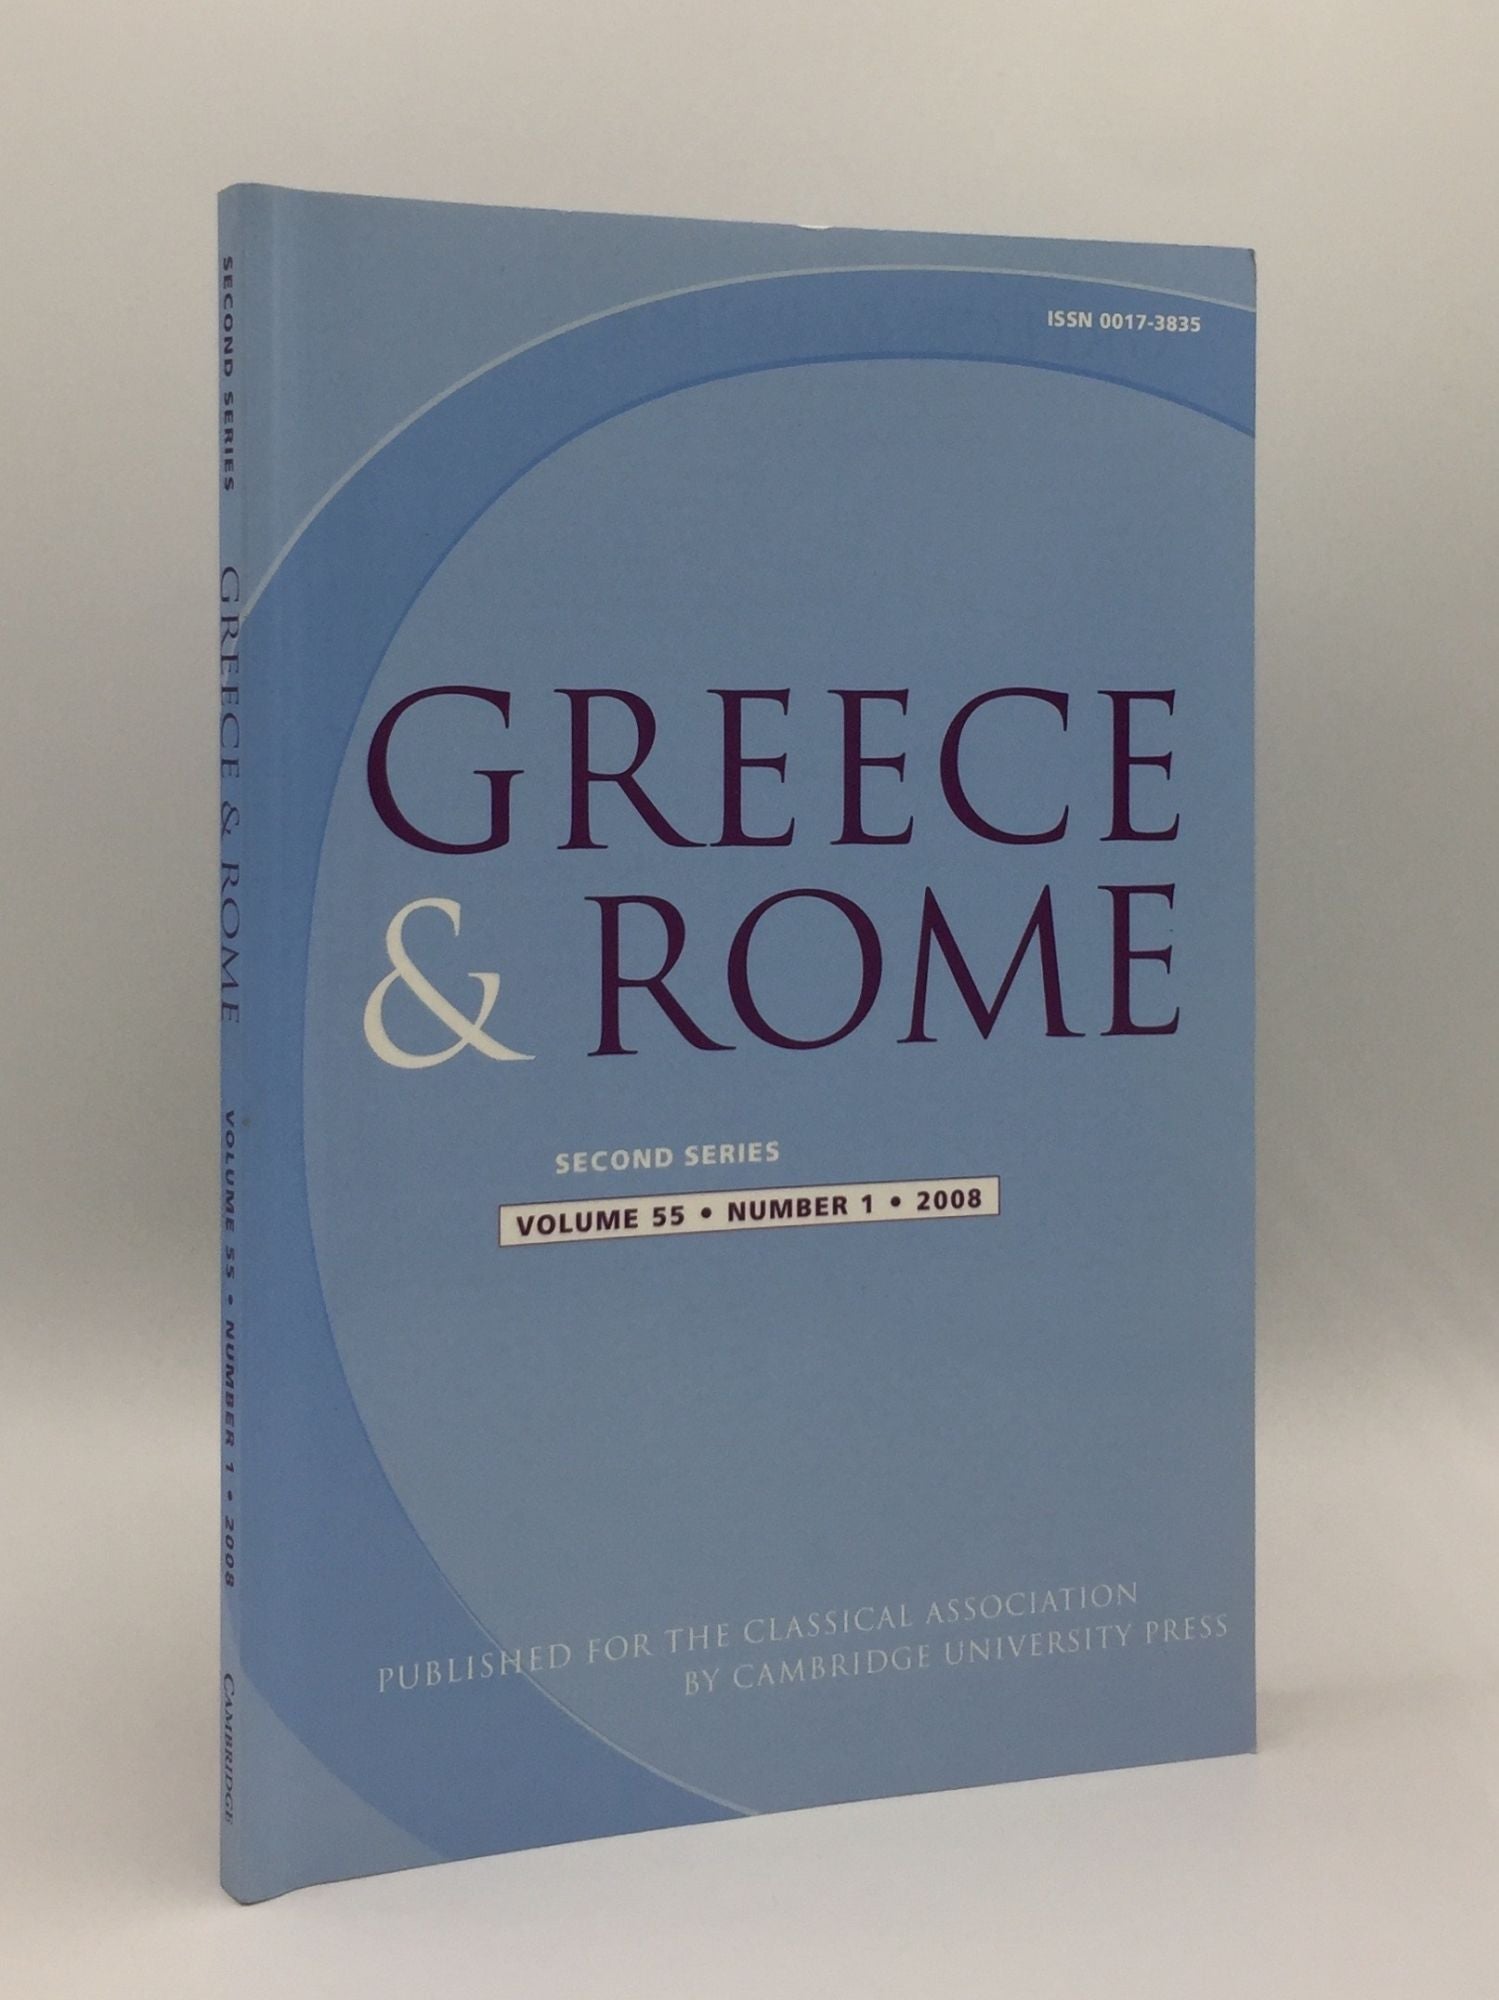 TAYLOR J., IZZET V., SHORROCK R. - Greece & Rome Second Series April 2008 Vol. 55 No. 1